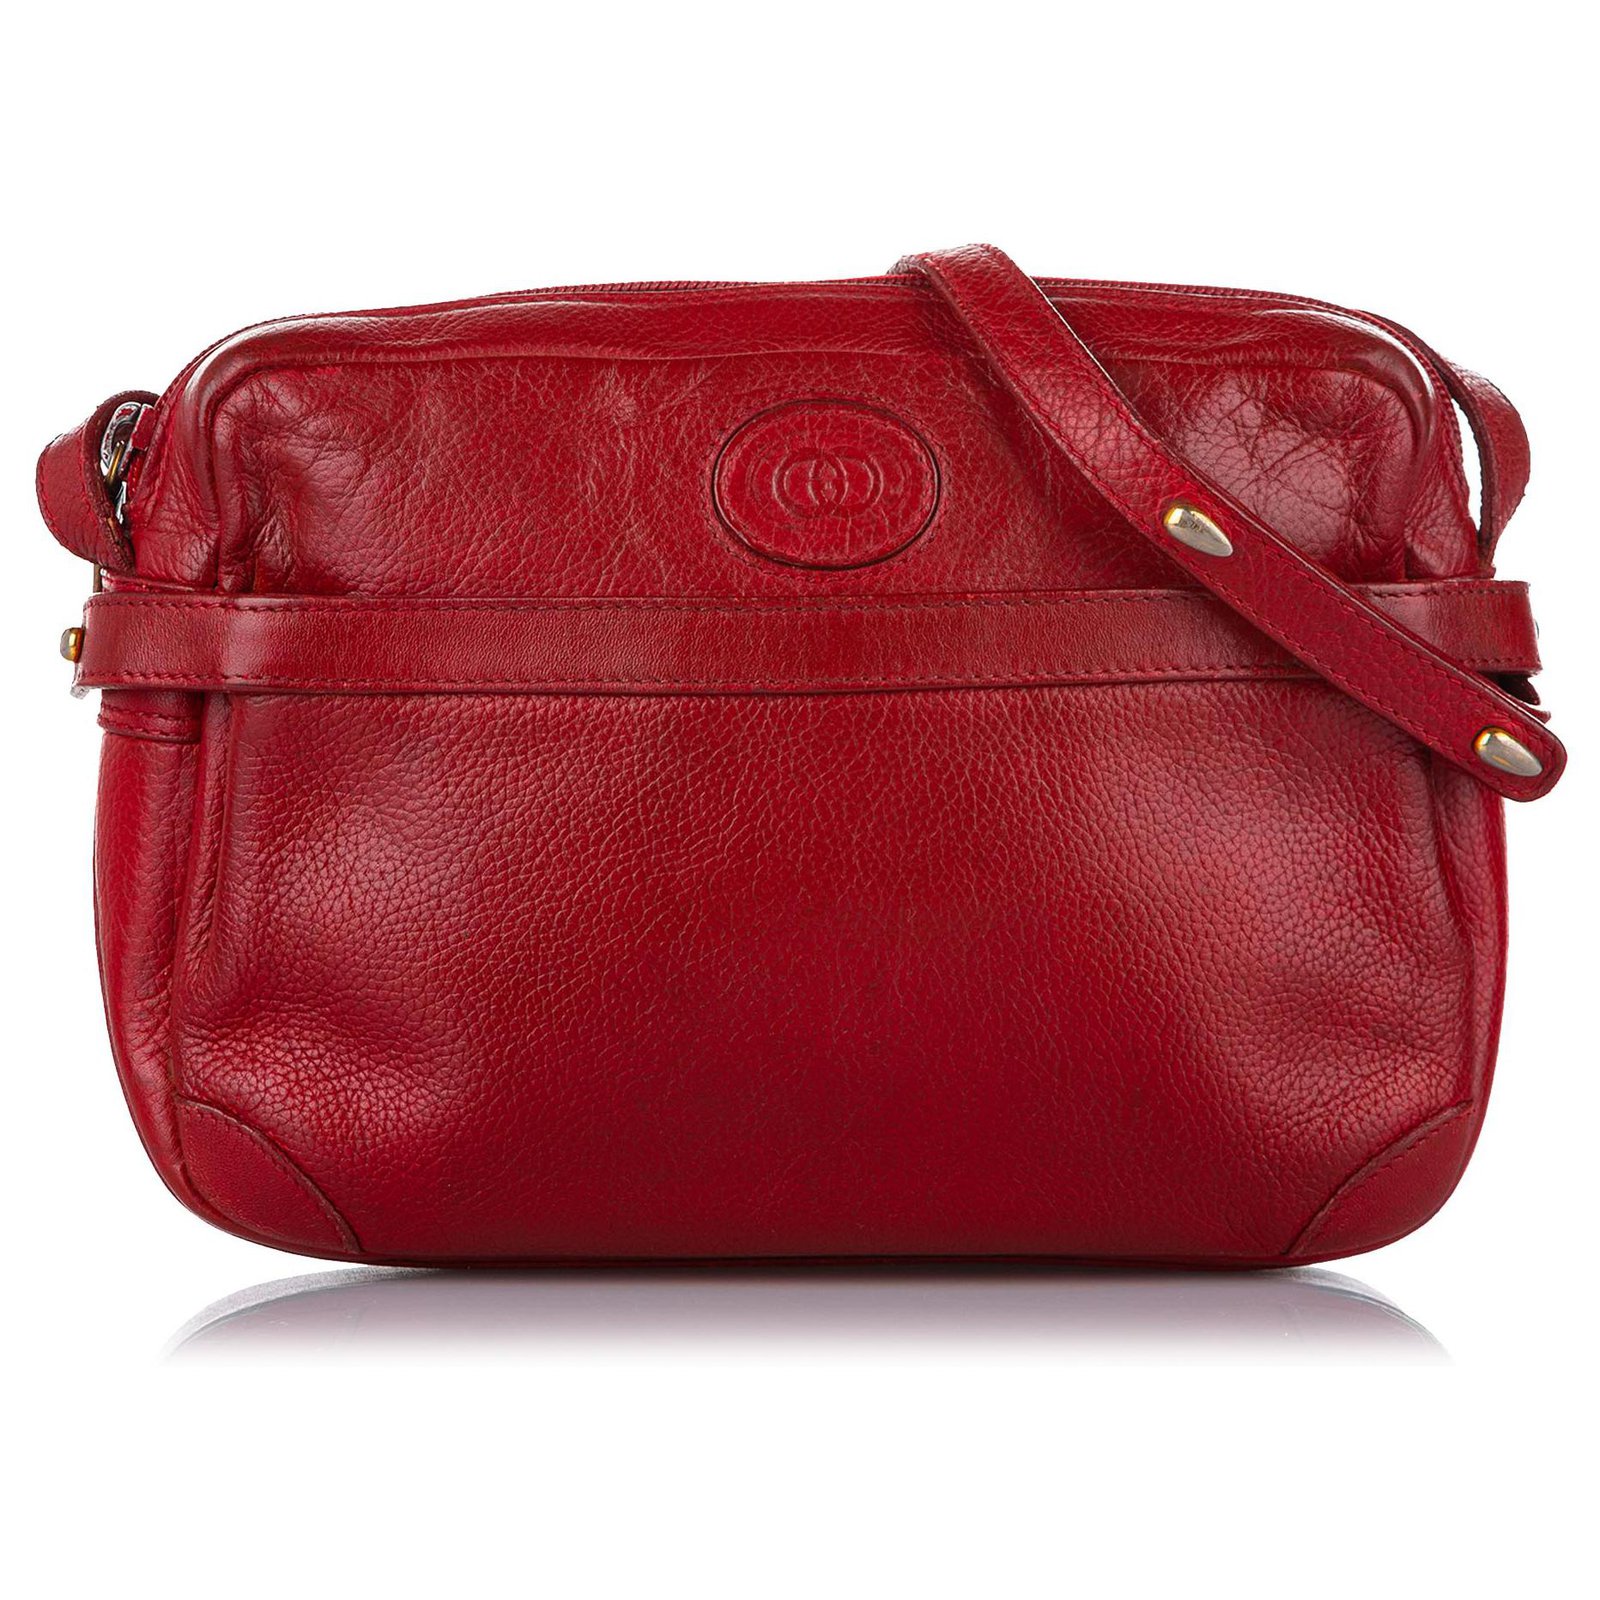 Gucci Interlocking G Shoulder Bag - Red